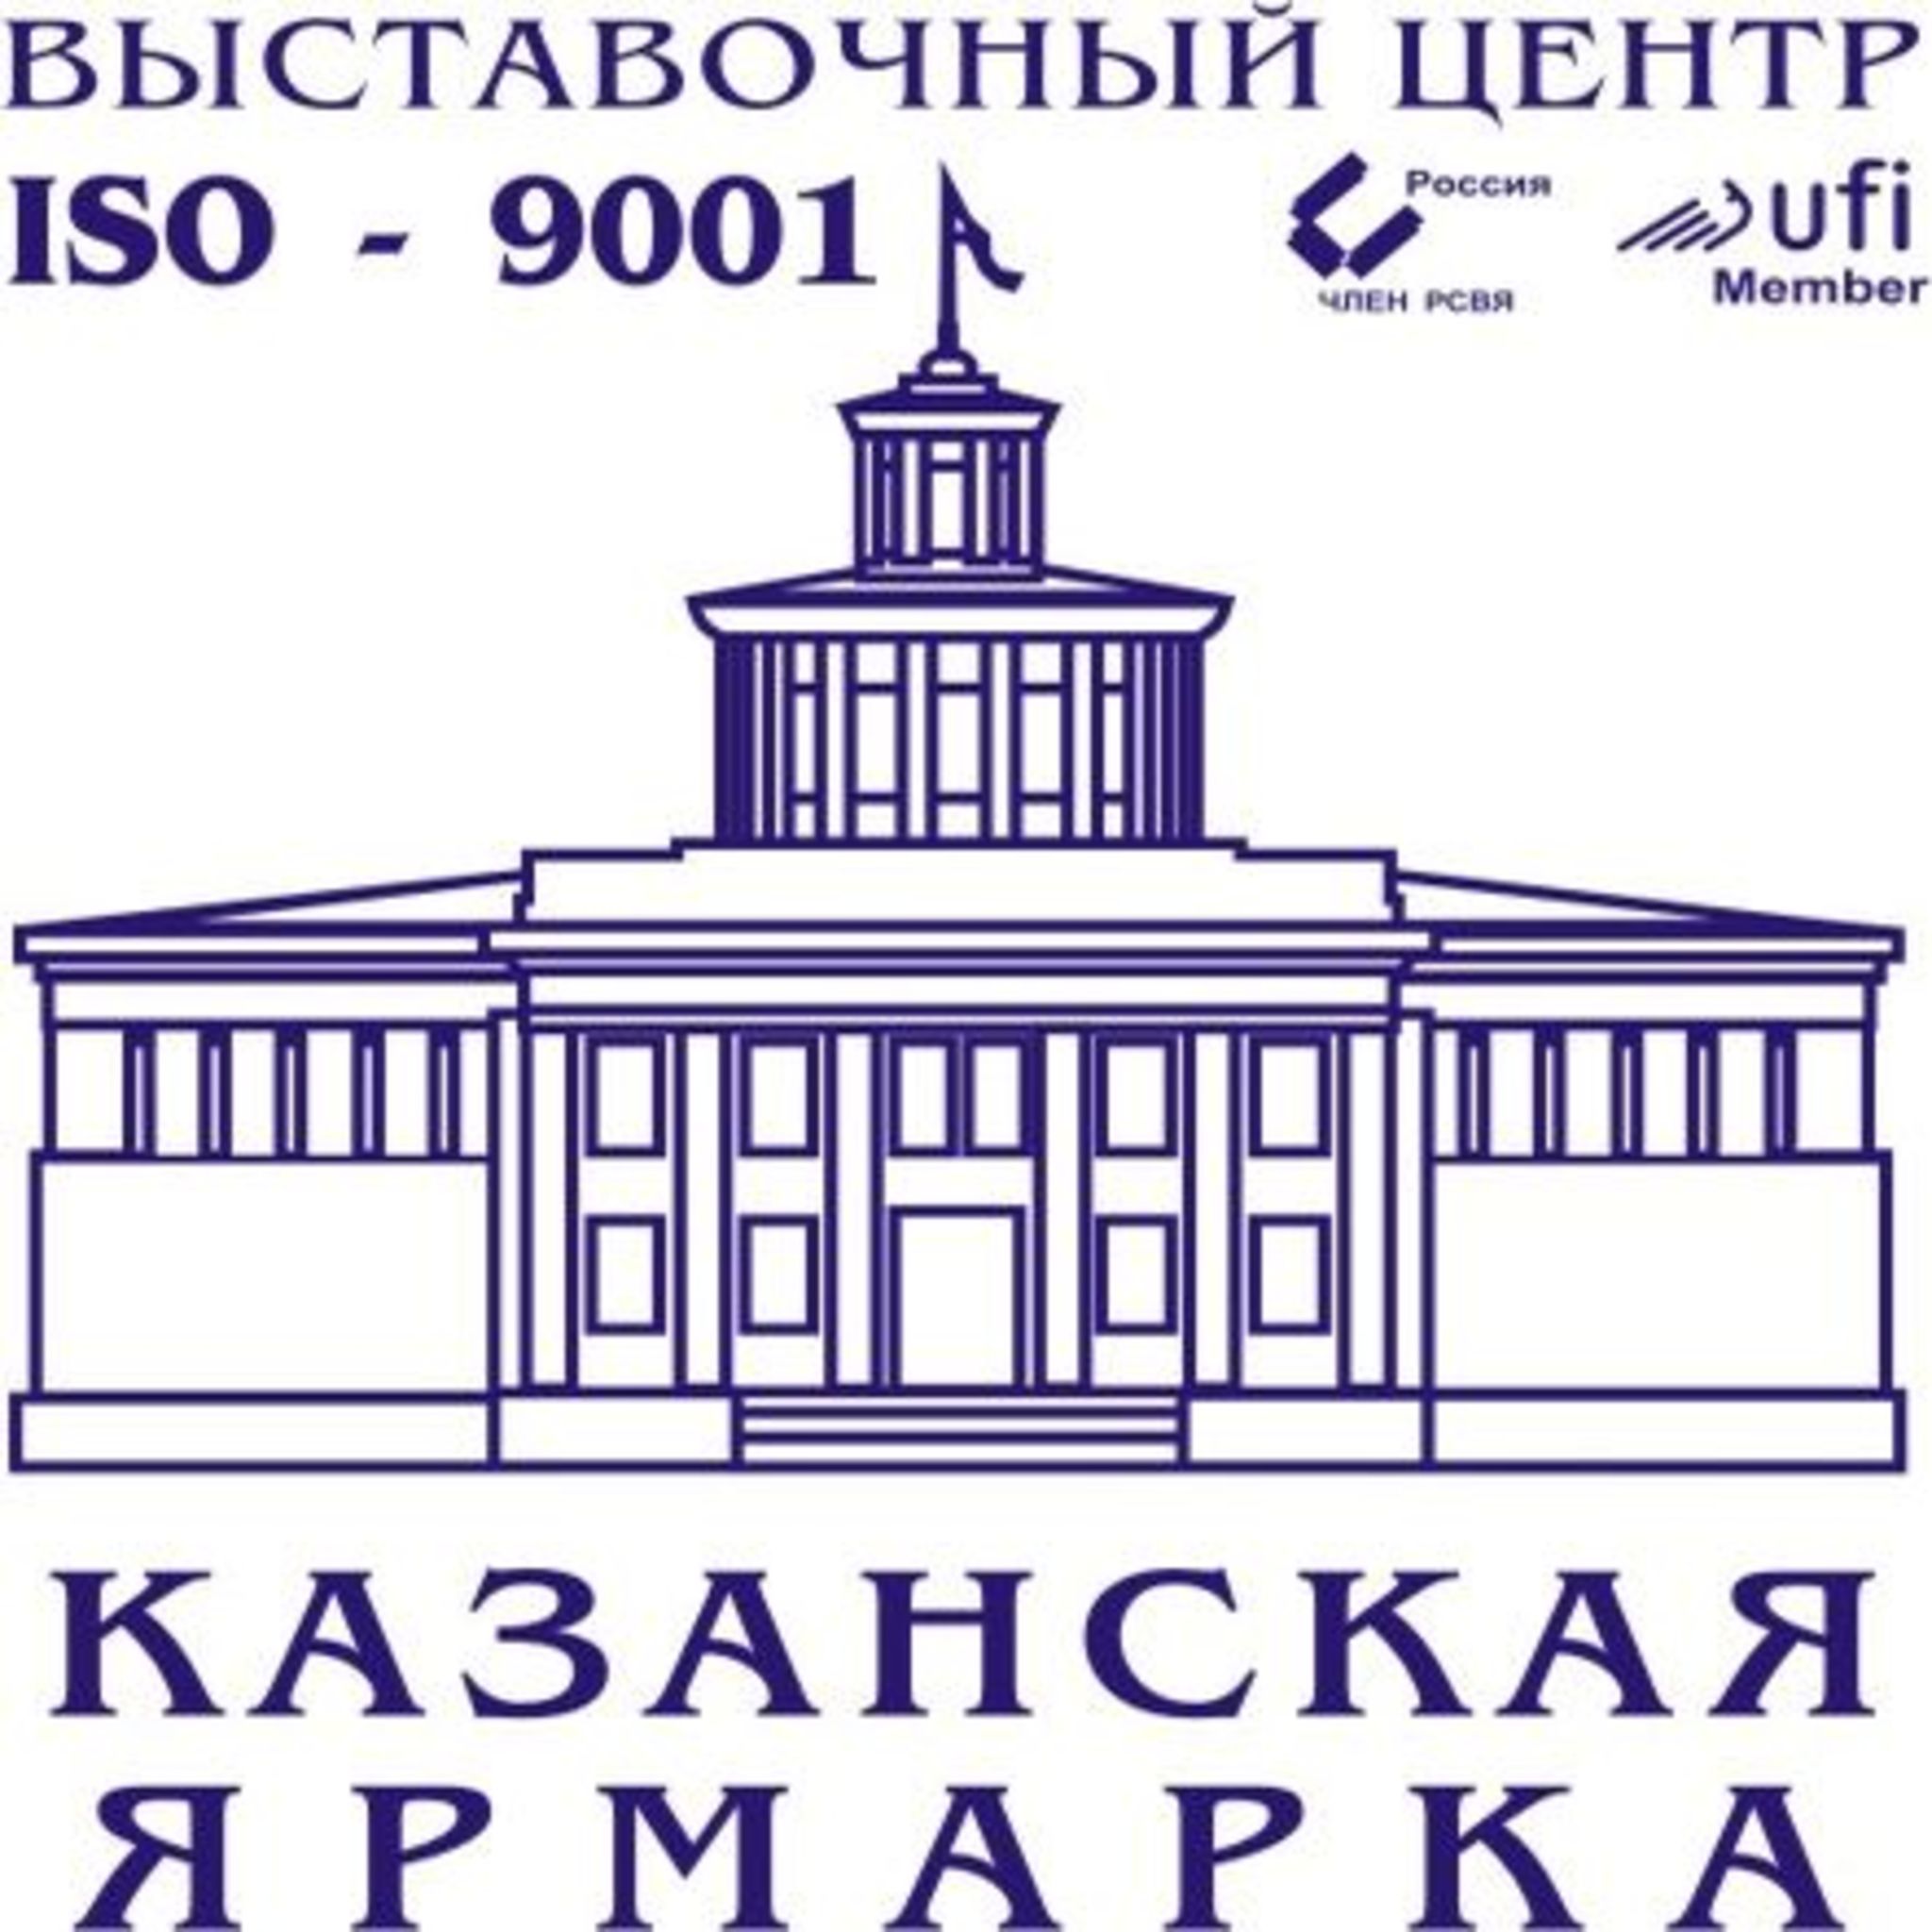 Kazan Fair Exhibition Center